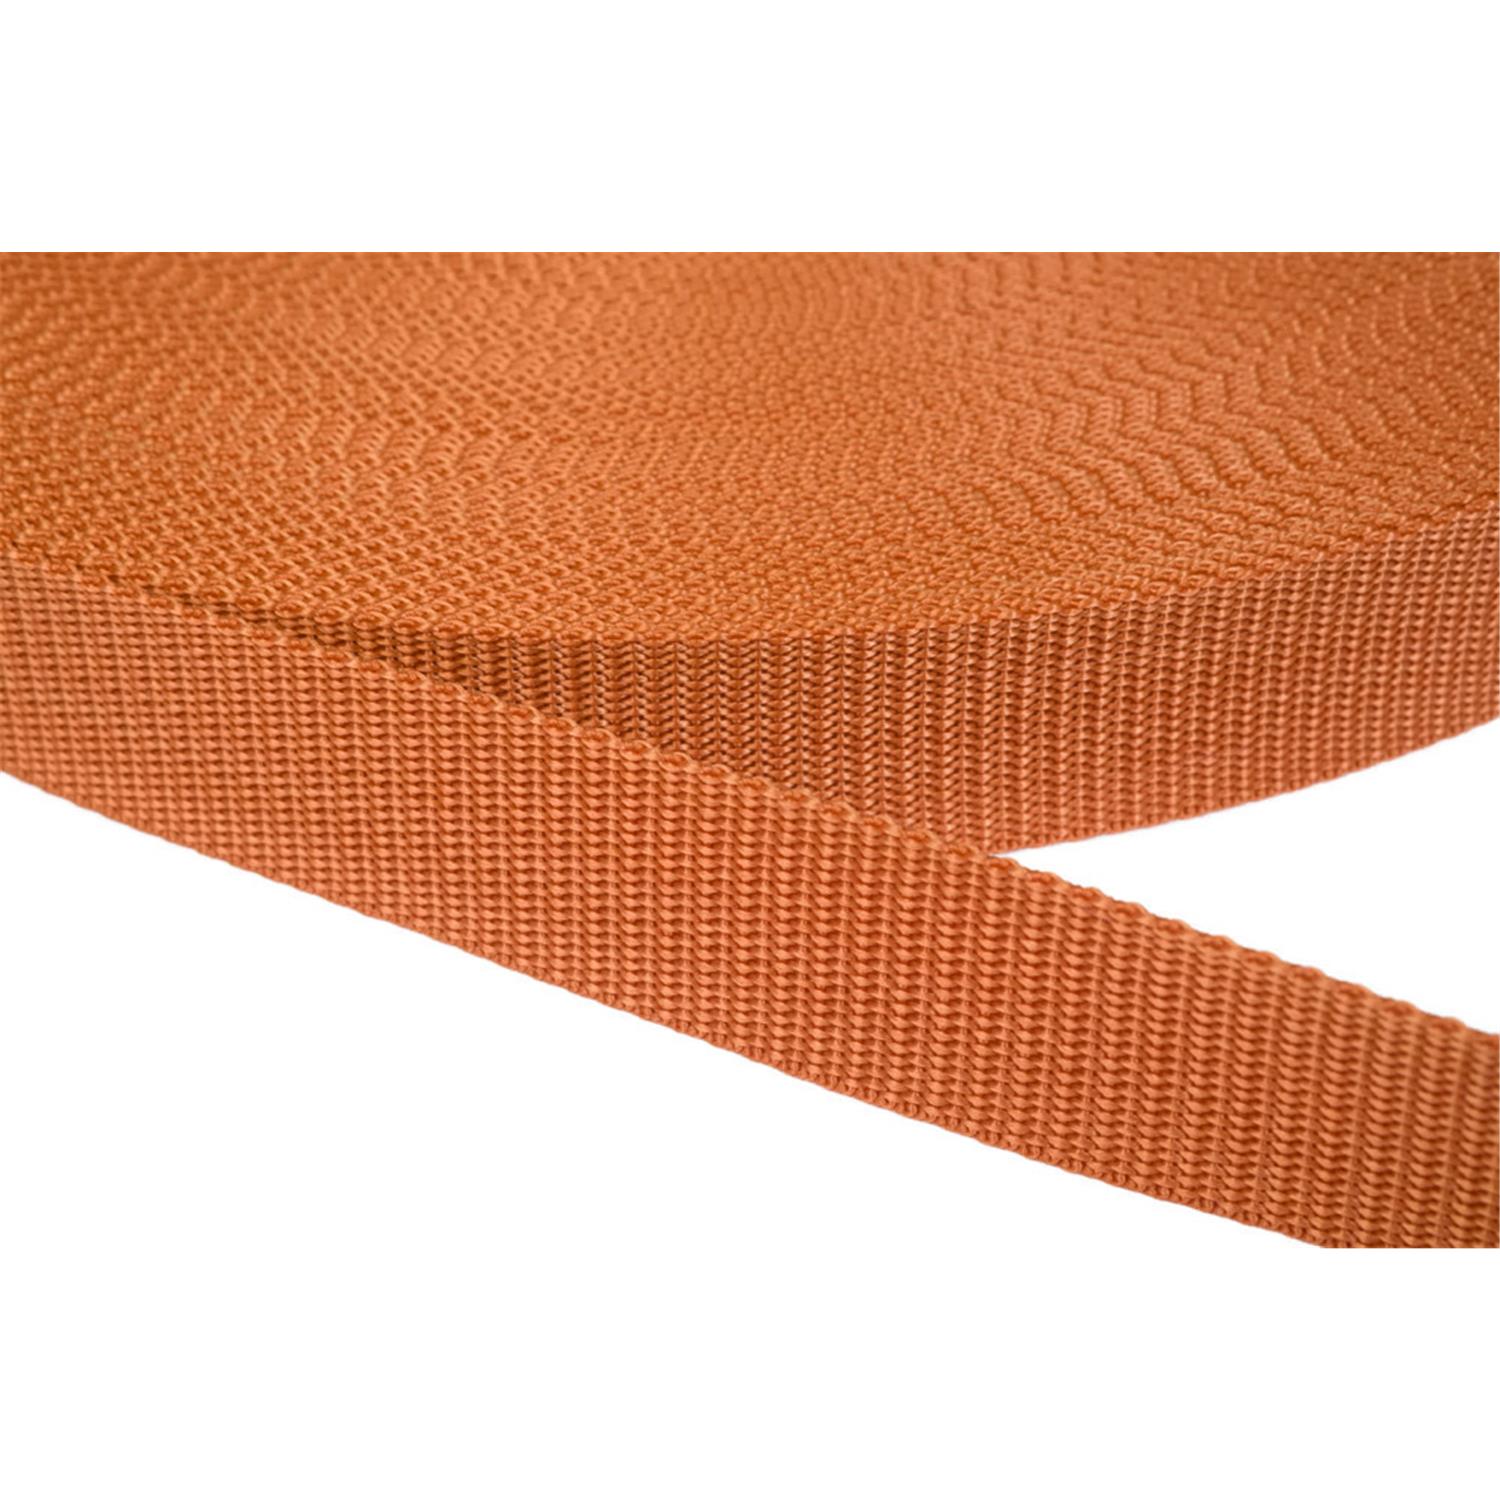 Gurtband 20mm breit aus Polypropylen in 41 Farben 05 - ockerbraun 12 Meter